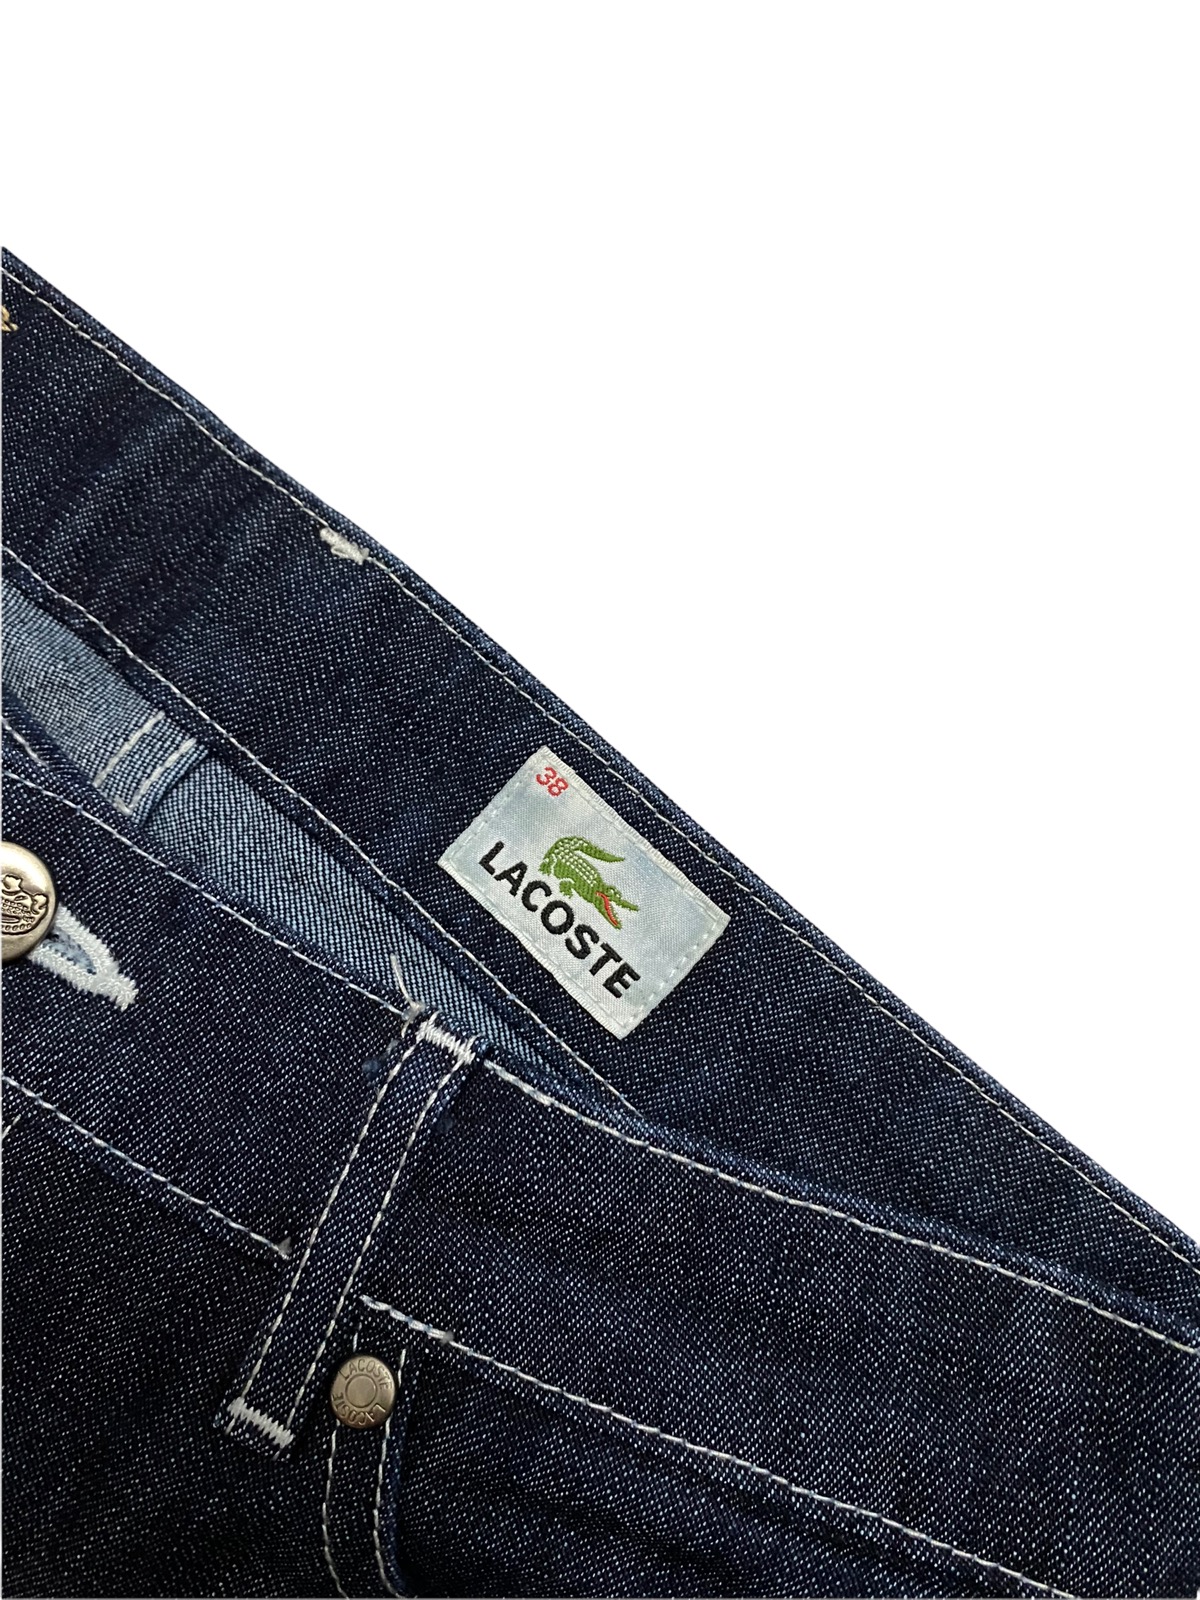 Women Lacoste Jeans Denim Made in Japan - 8